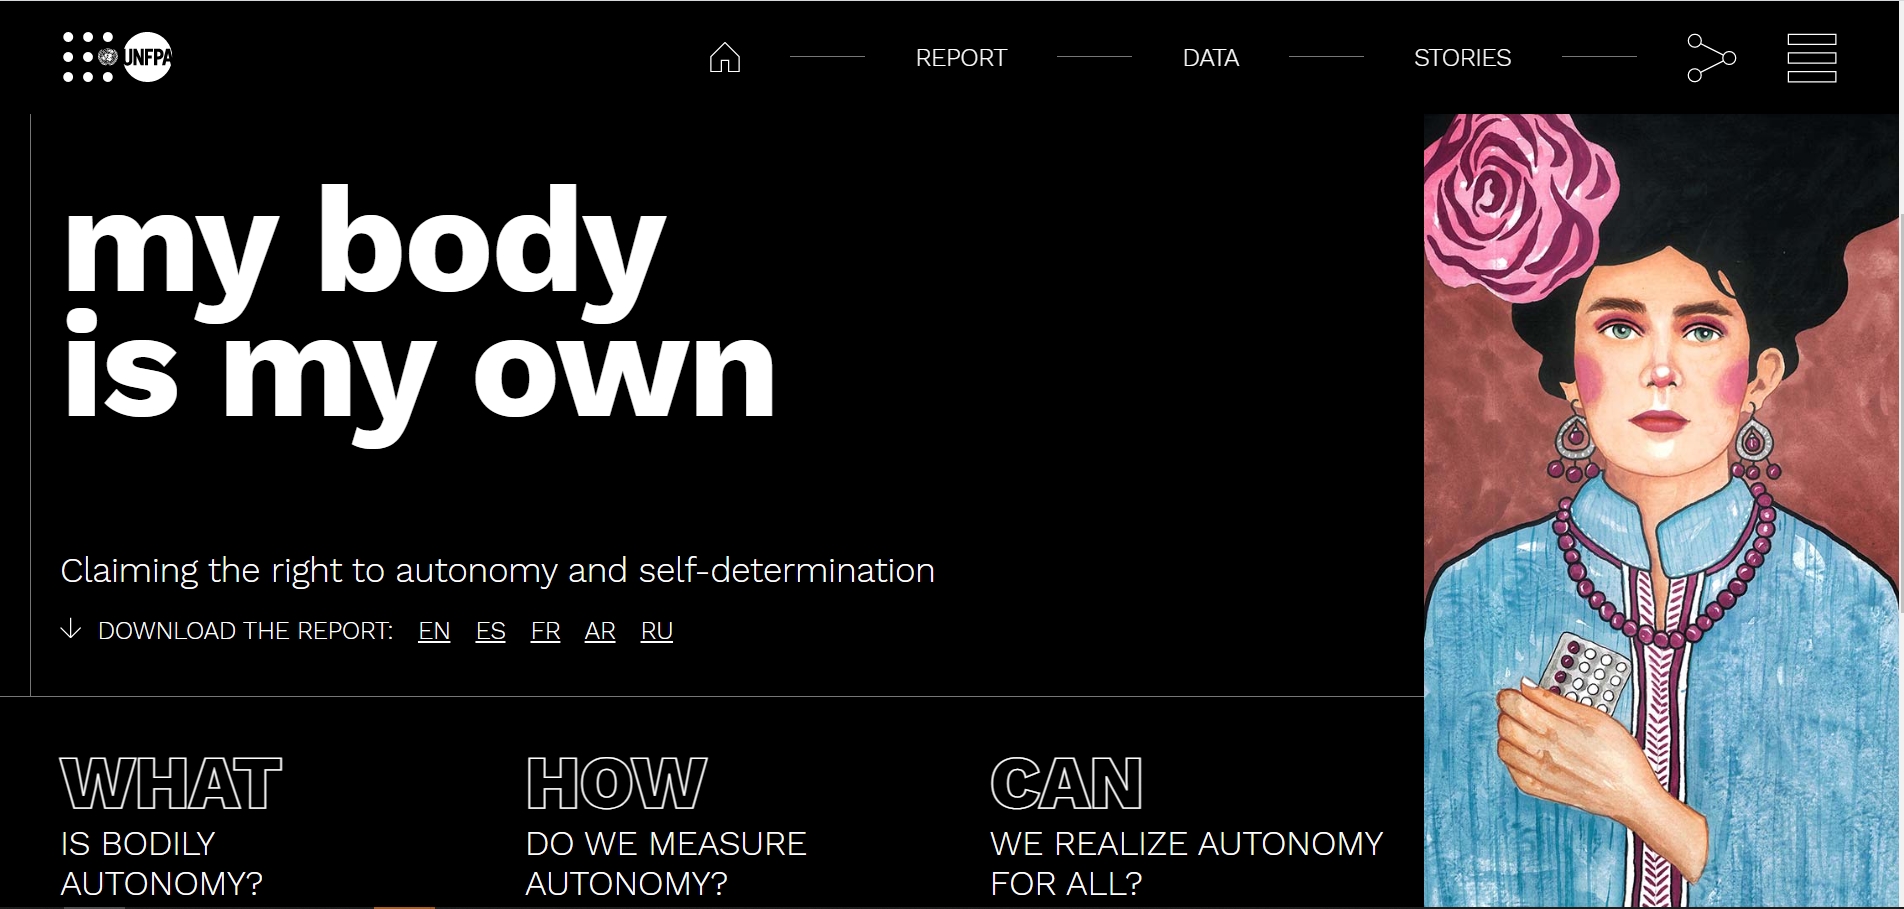 유엔인구기금 2021년 세계인구현황보고서 ‘내 몸은 나의 것’ . 유엔인구기금 홈페이지 캡처